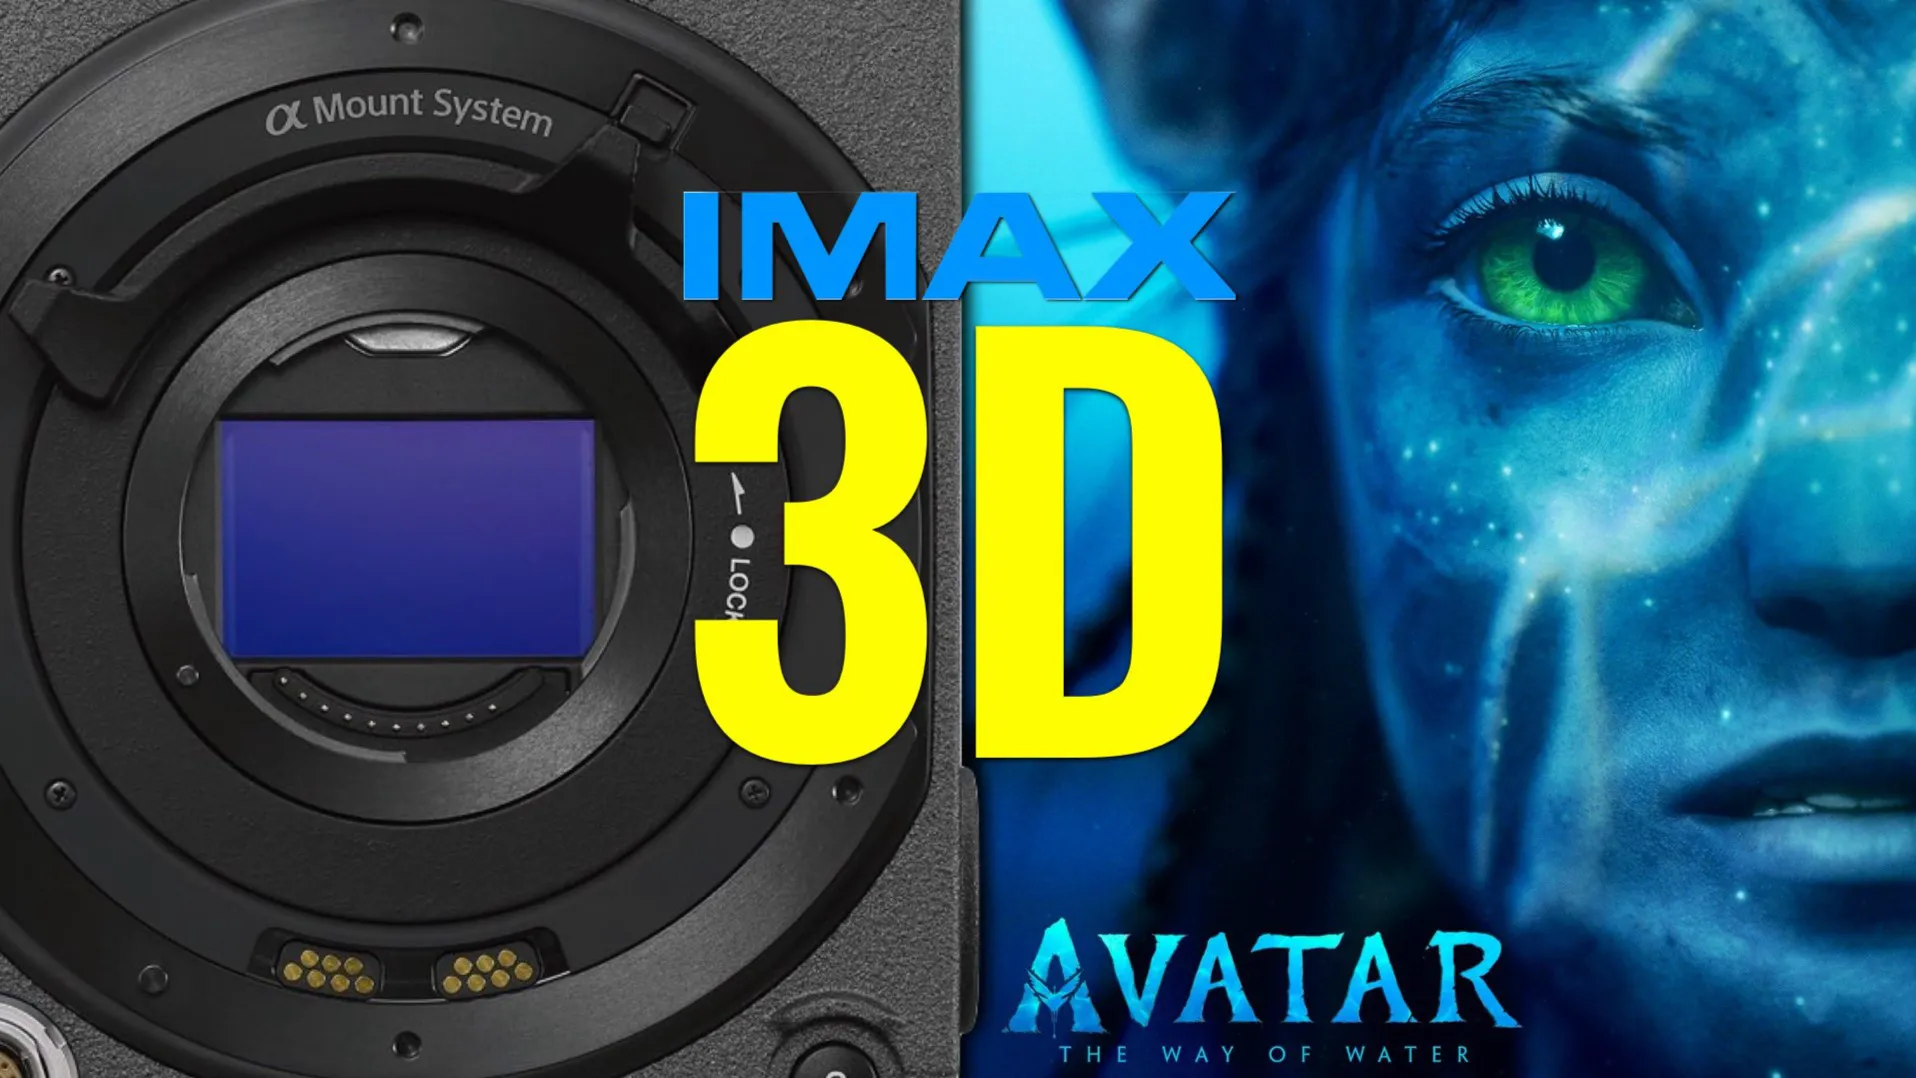 Không thể bỏ qua bộ phim 3D đậm chất sci-fi nổi tiếng Avatar của đạo diễn James Cameron. Tận hưởng không gian ảo tuyệt đẹp và một câu chuyện đầy hấp dẫn cùng những hình ảnh 3D chân thực nhất. Xem ngay hôm nay để trải nghiệm những điều kỳ diệu trong thế giới Avatar.